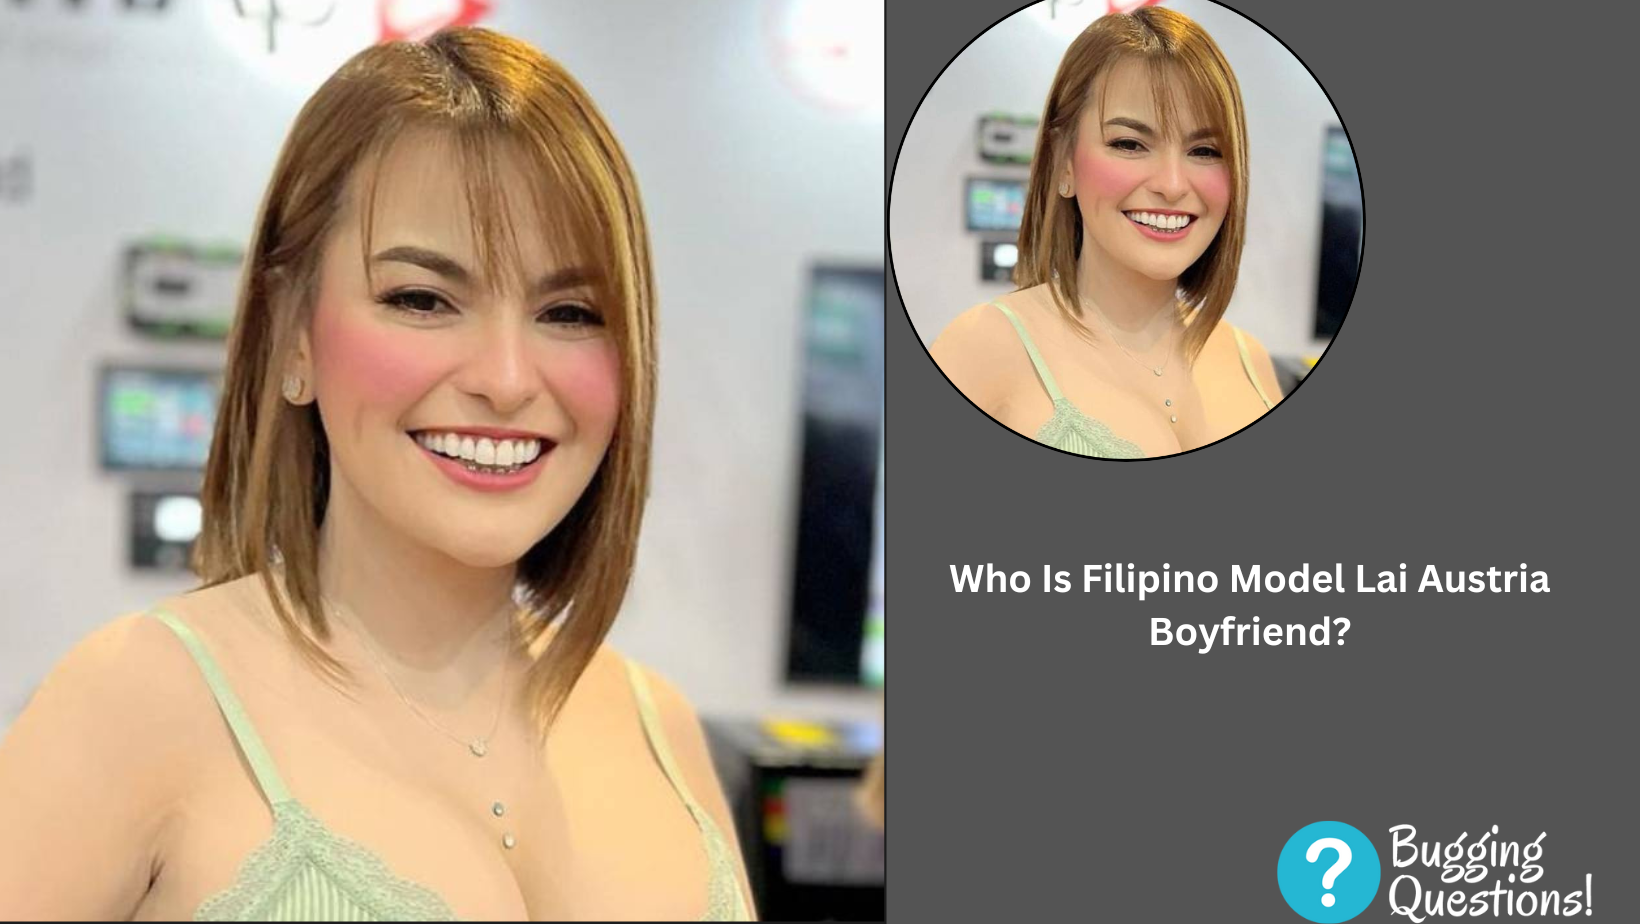 Who Is Filipino Model Lai Austria Boyfriend?